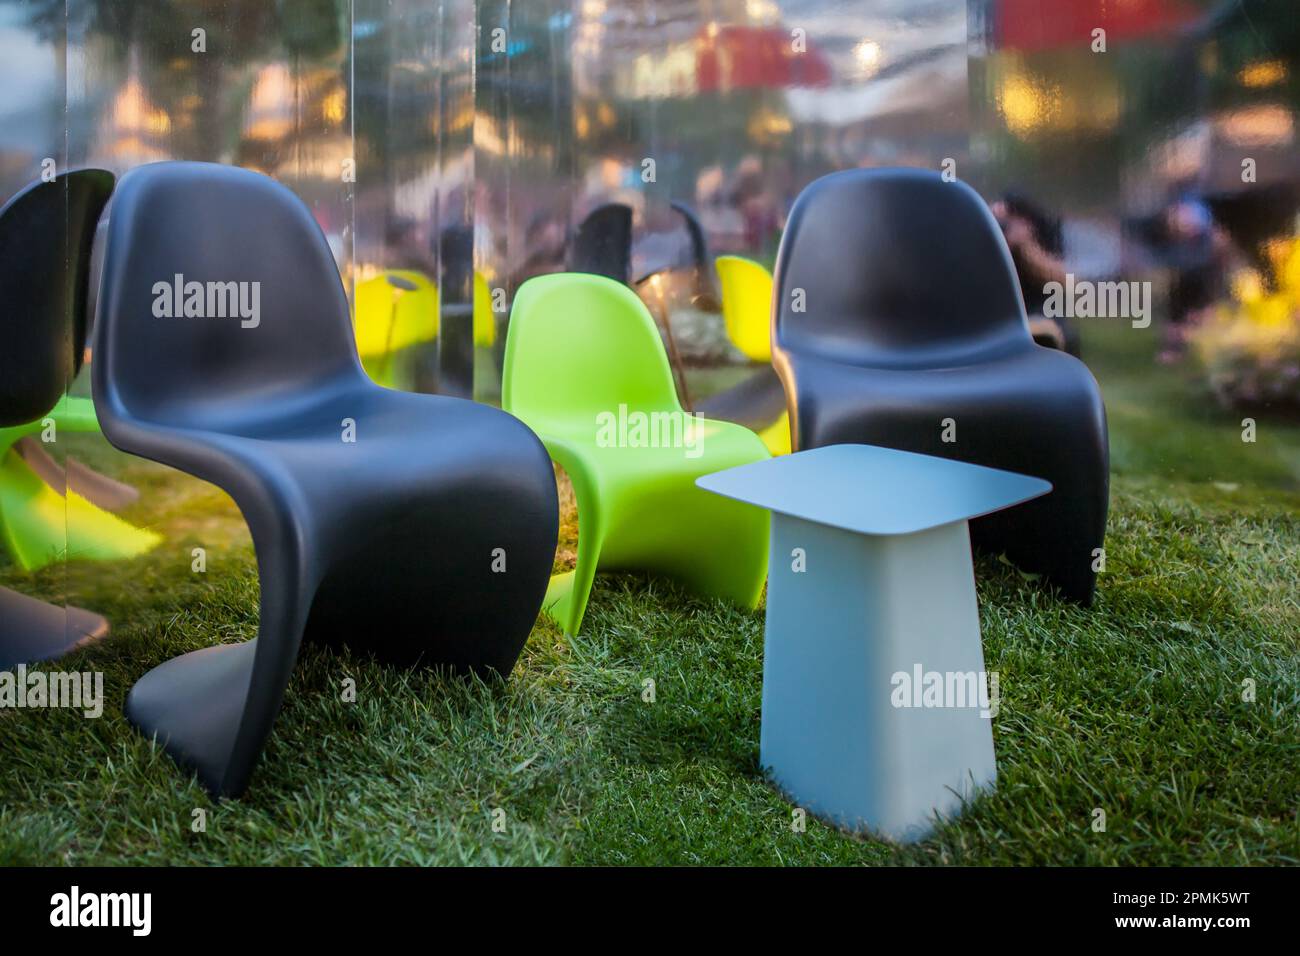 Sedie colorate in plastica dal design moderno per rilassarsi all'aperto sull'erba e nella natura in un'atmosfera tranquilla Foto Stock